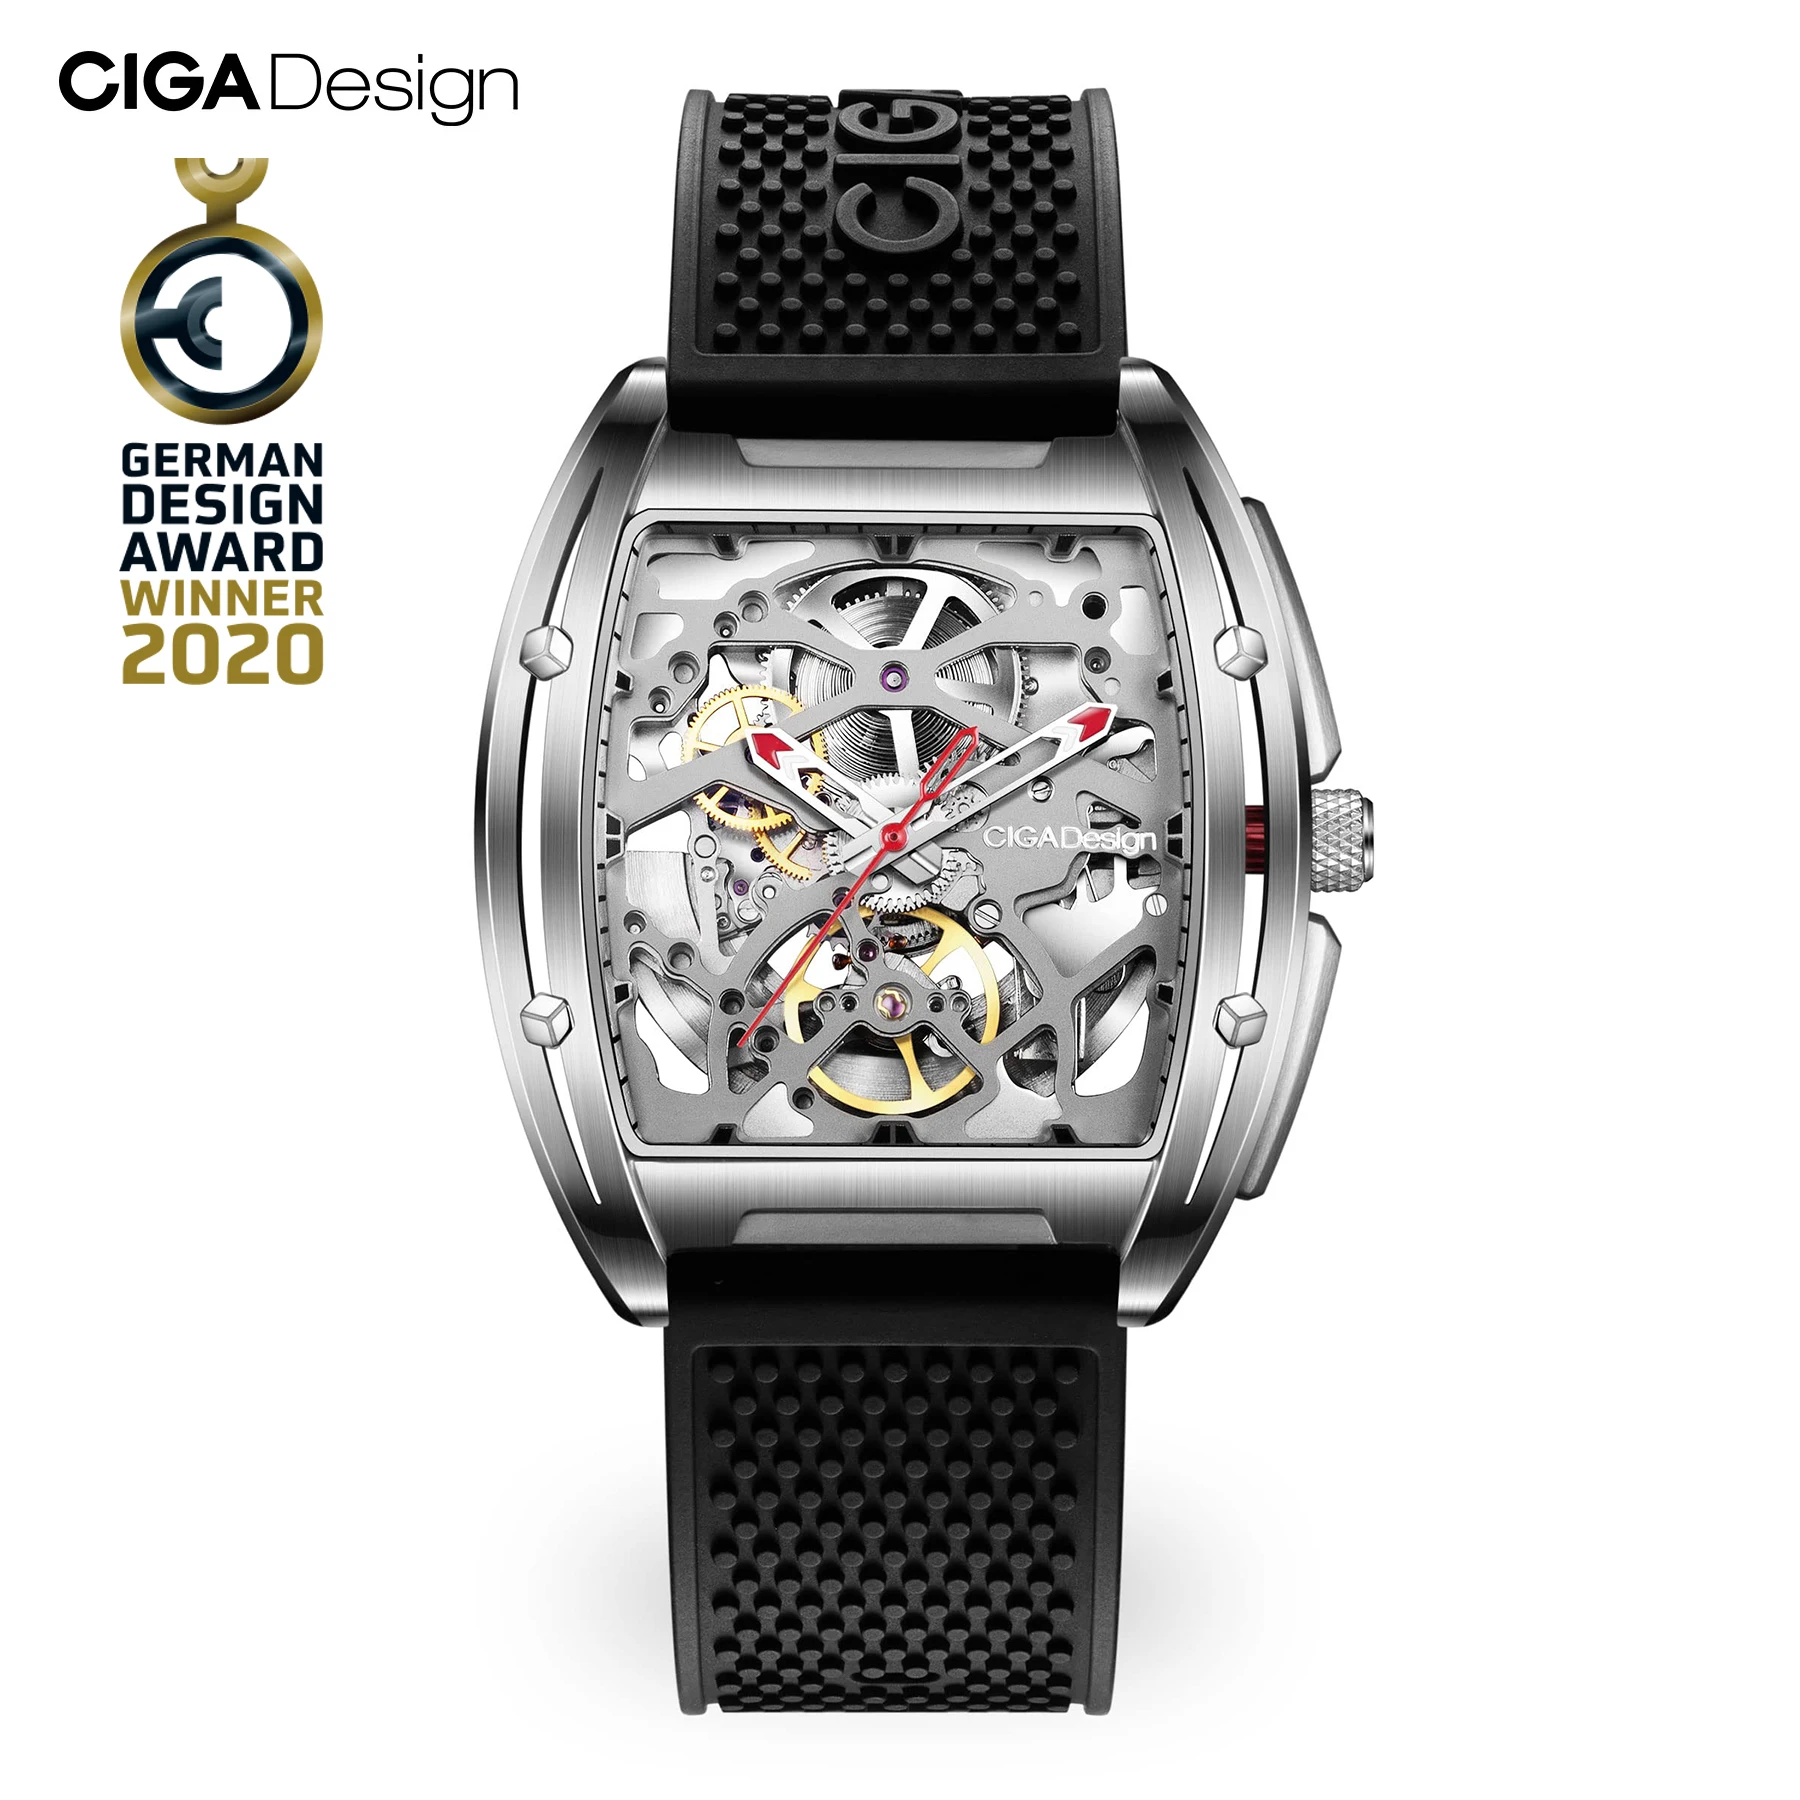 Ciga Design Z-Serie Skelett automatische mechanische Uhr Männer Edelstahl gehäuse Saphirglas Silikon Leder zwei Armbänder